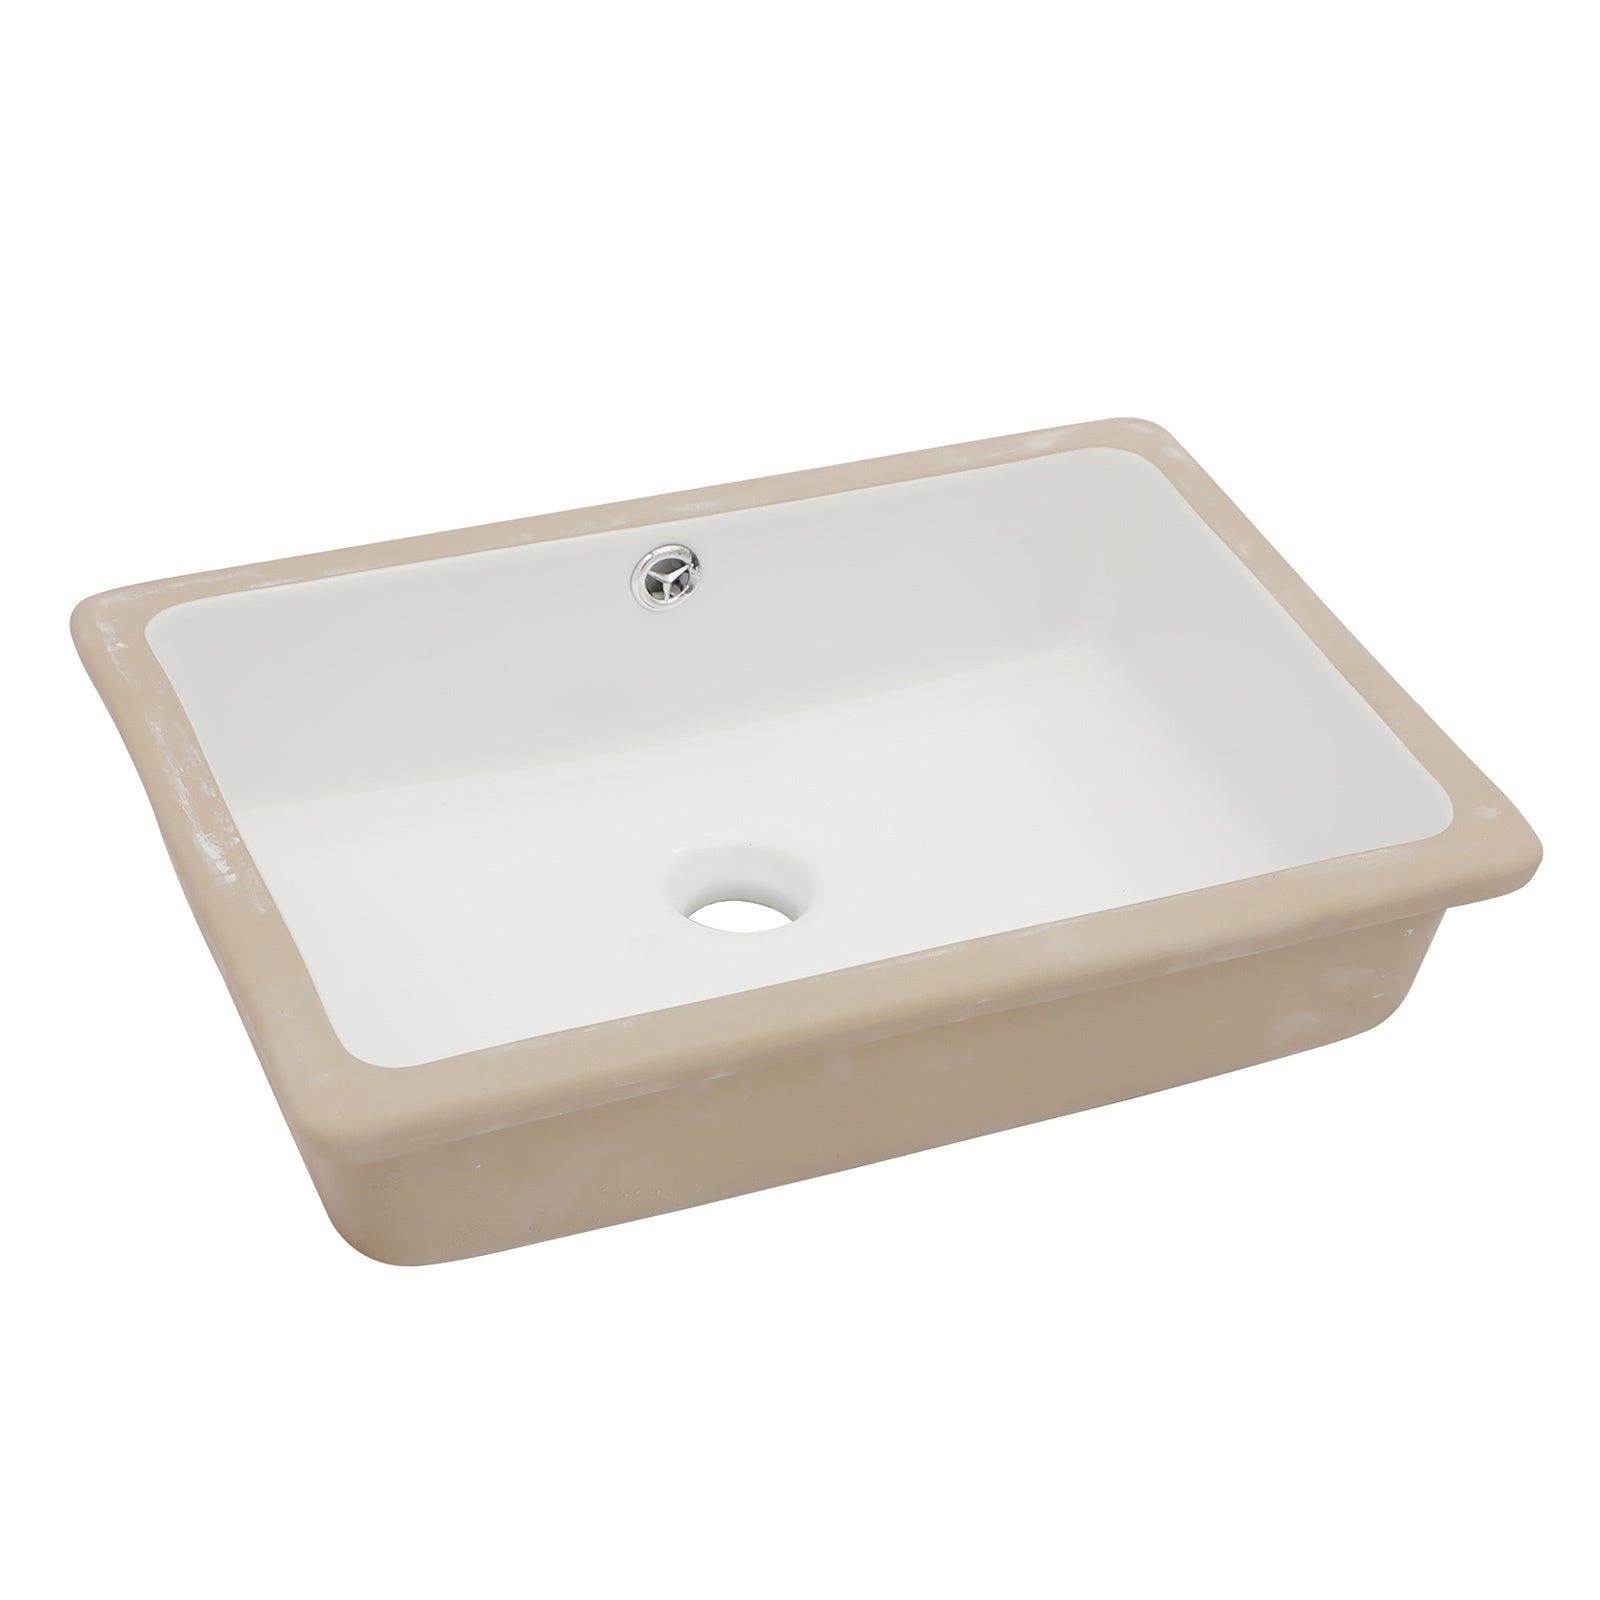 18"x12" White Ceramic Rectangular Undermount Bathroom white-ceramic